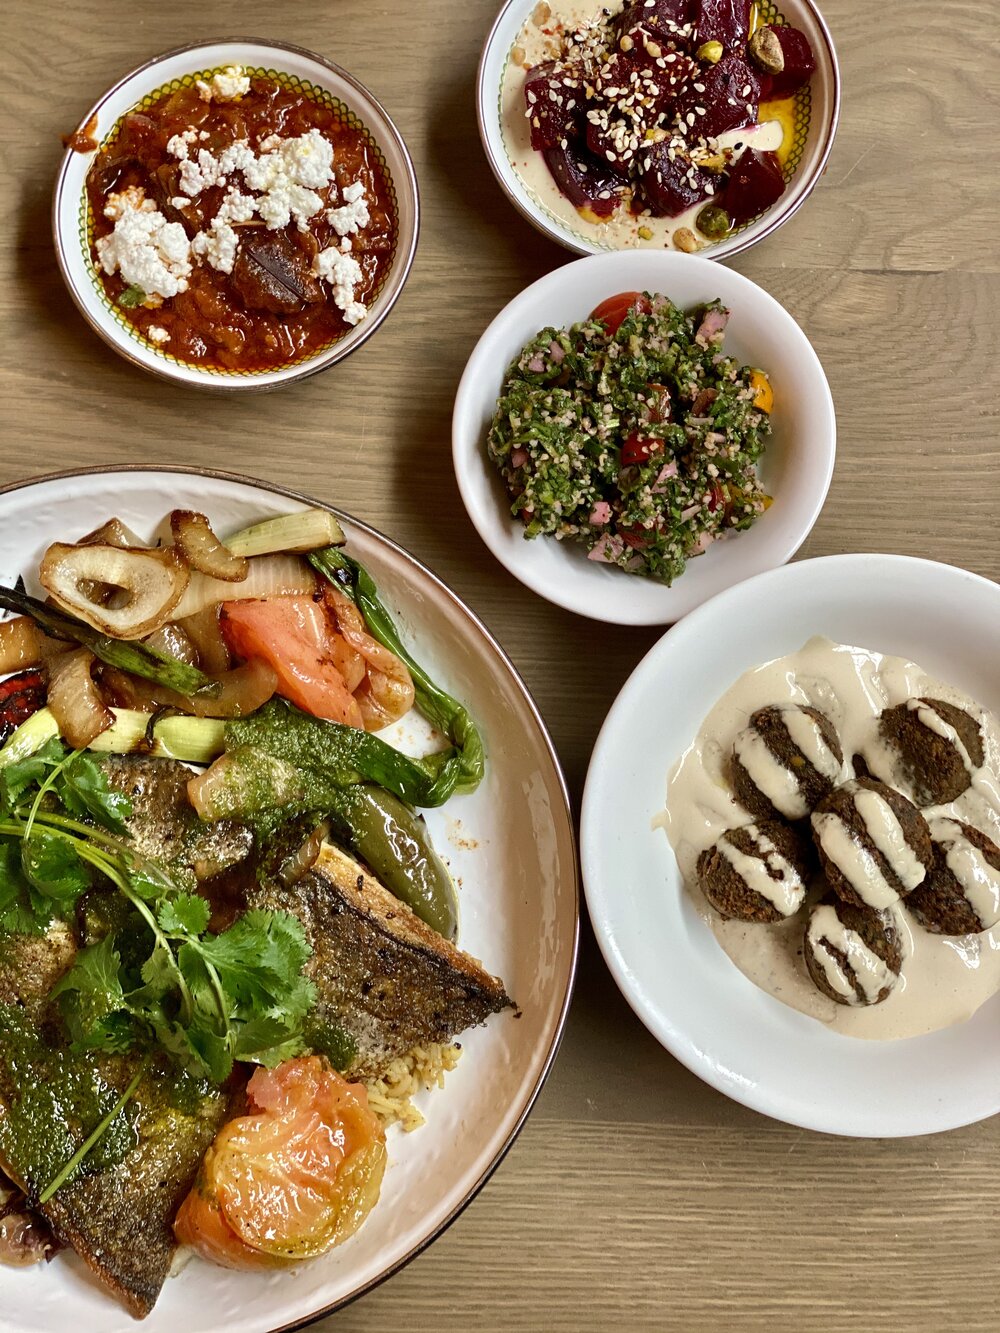 Sunday Spread - Including side of falafel